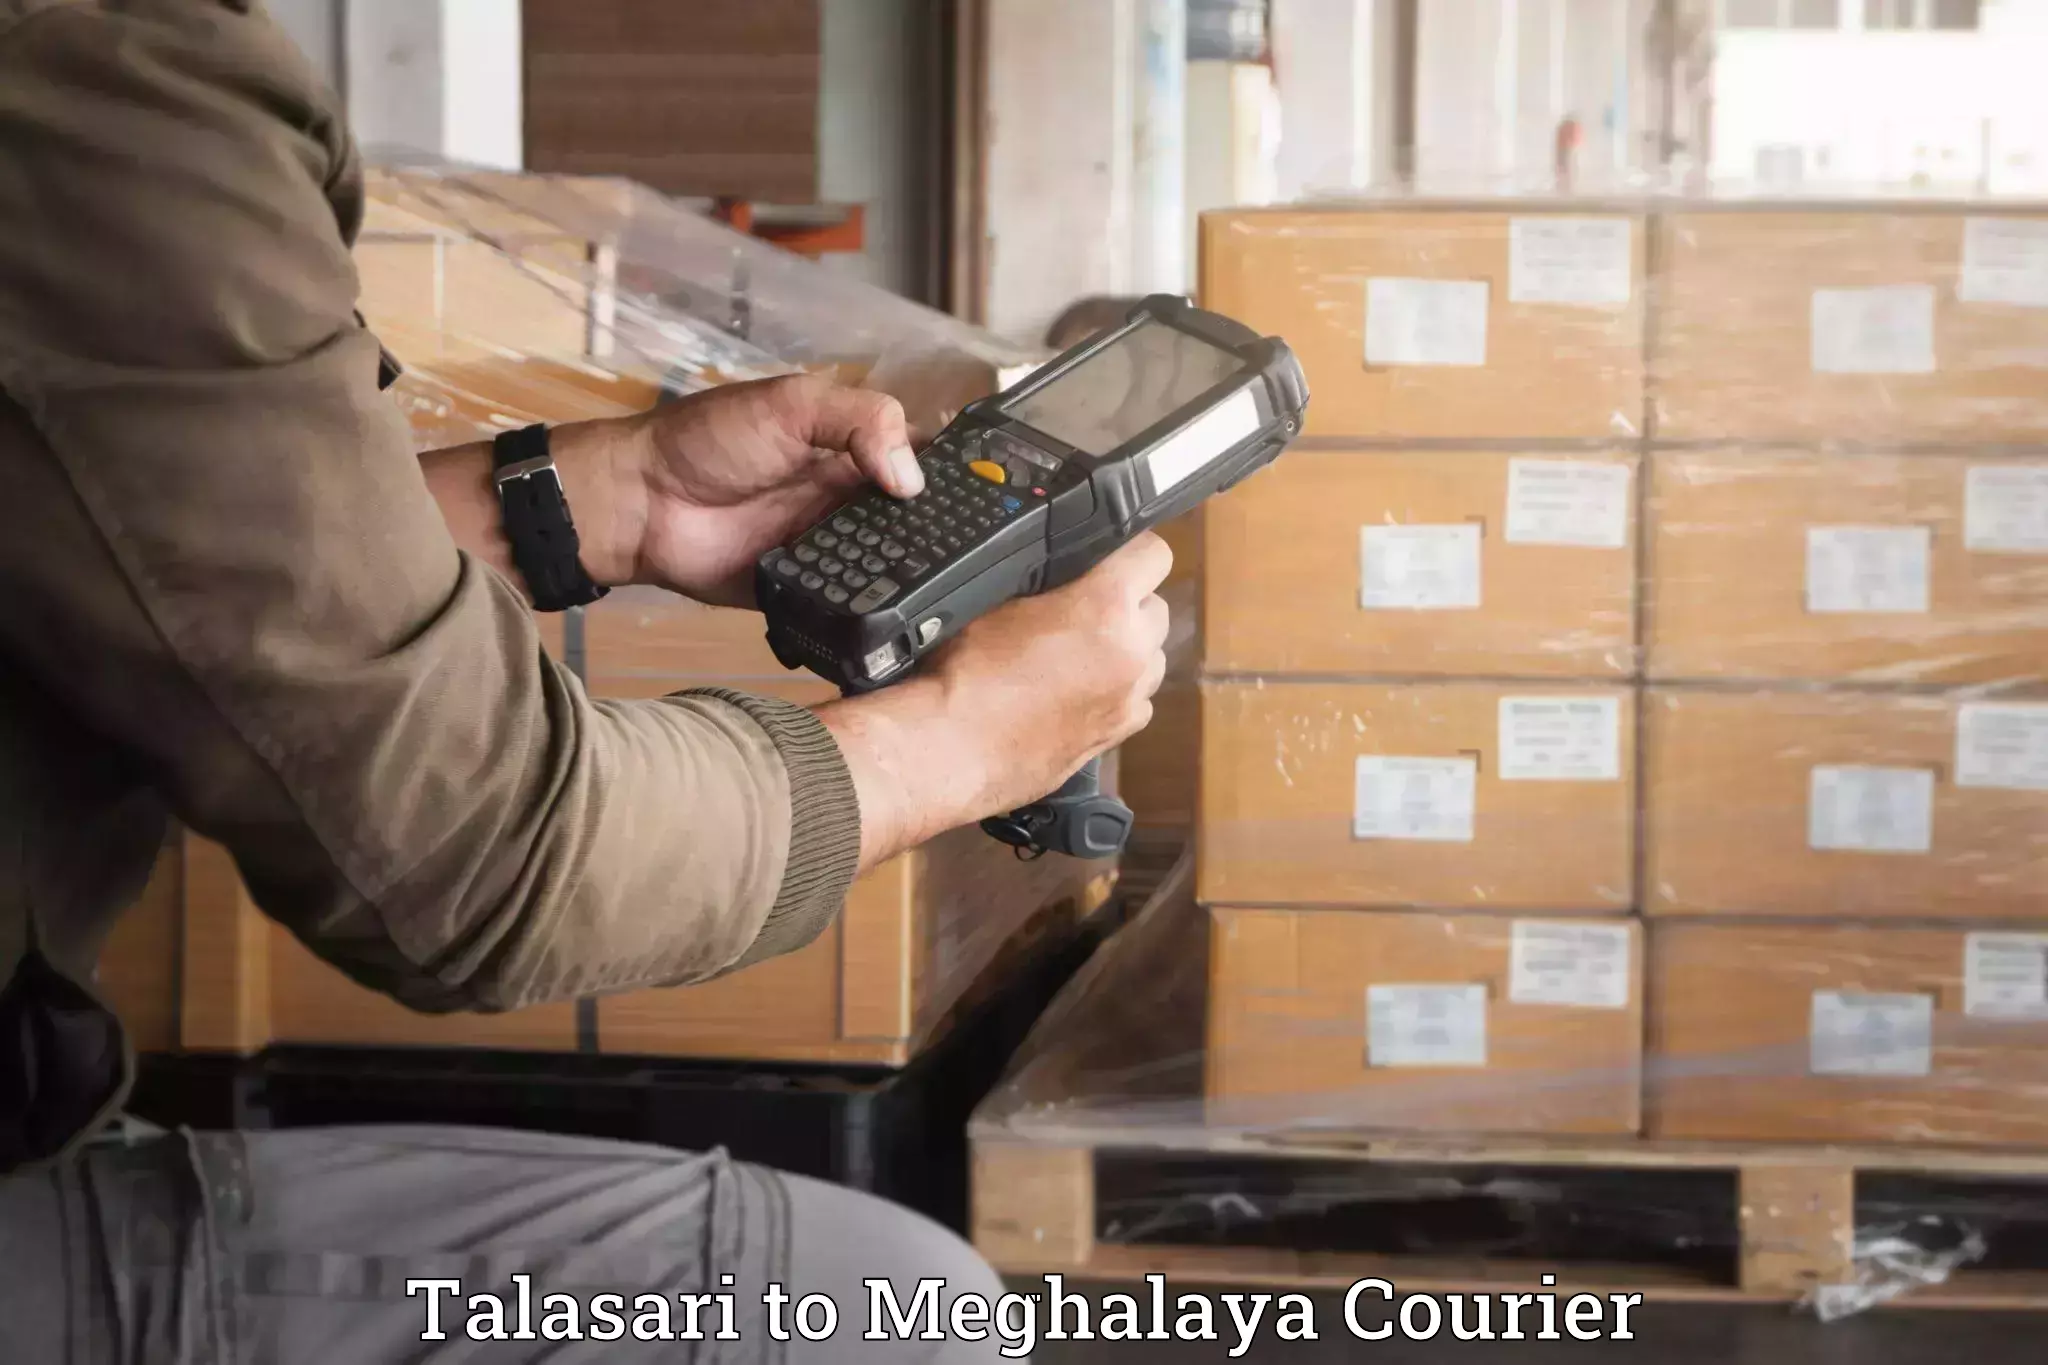 Luggage transit service Talasari to Meghalaya